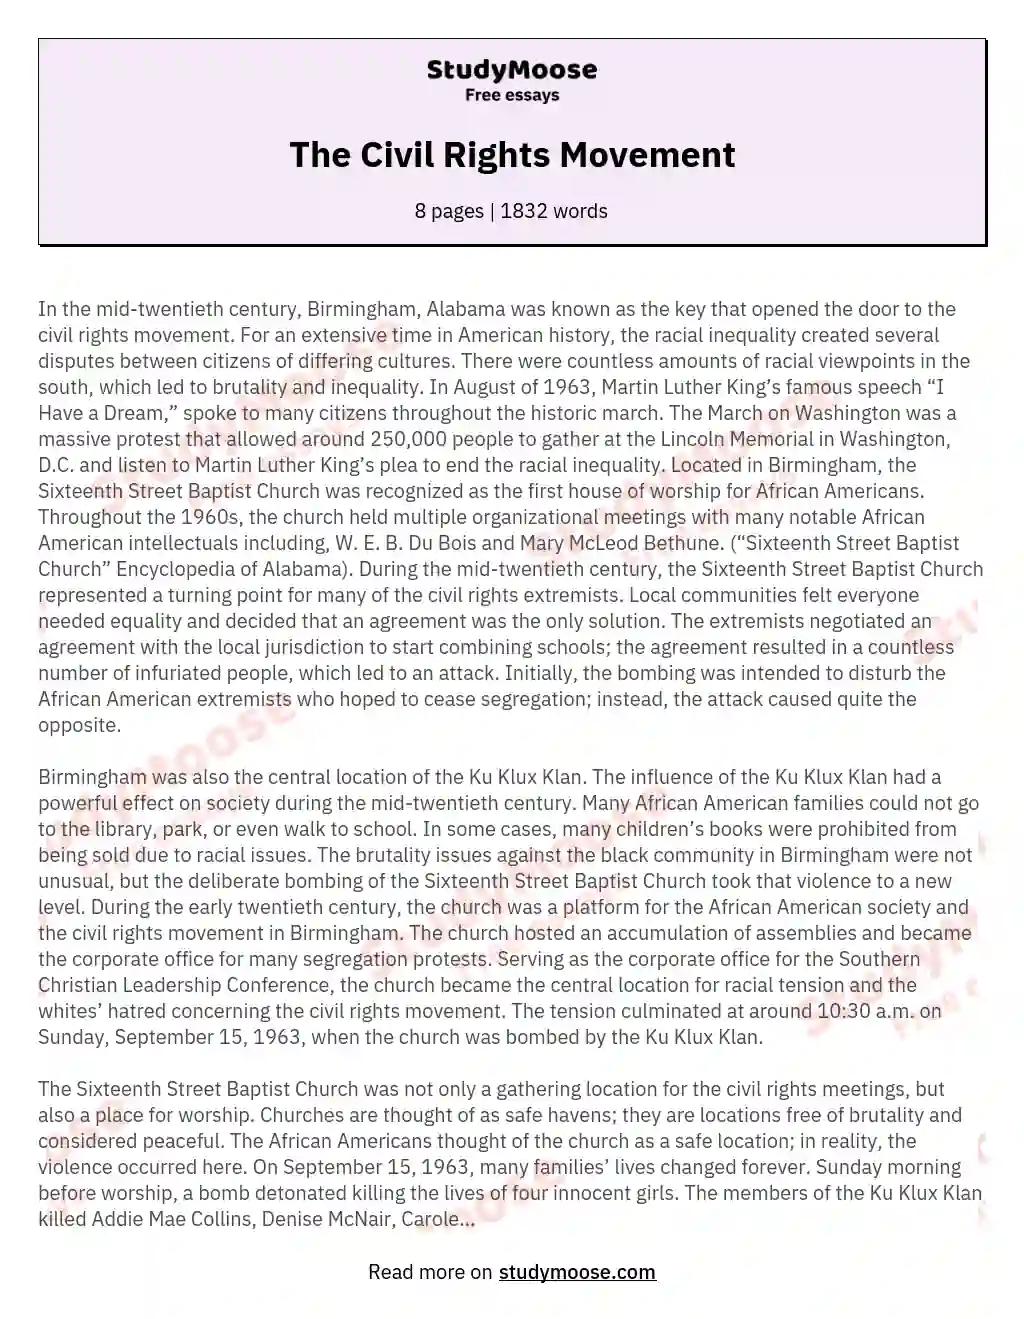 The Civil Rights Movement essay